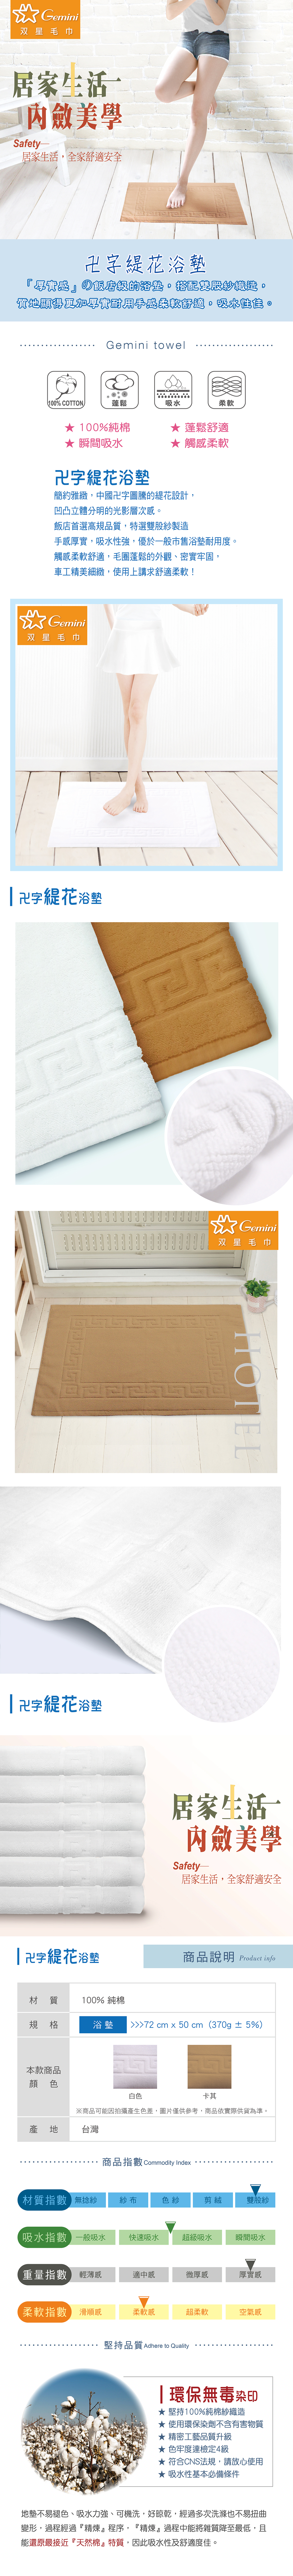 Gemini 純棉浴室地墊6 入組 50 x 72 公分 - 白，簡約雅緻的緹花設計，環保無毒的染印，100%純棉製造，蓬鬆舒適，可以瞬間吸水且觸感柔軟。